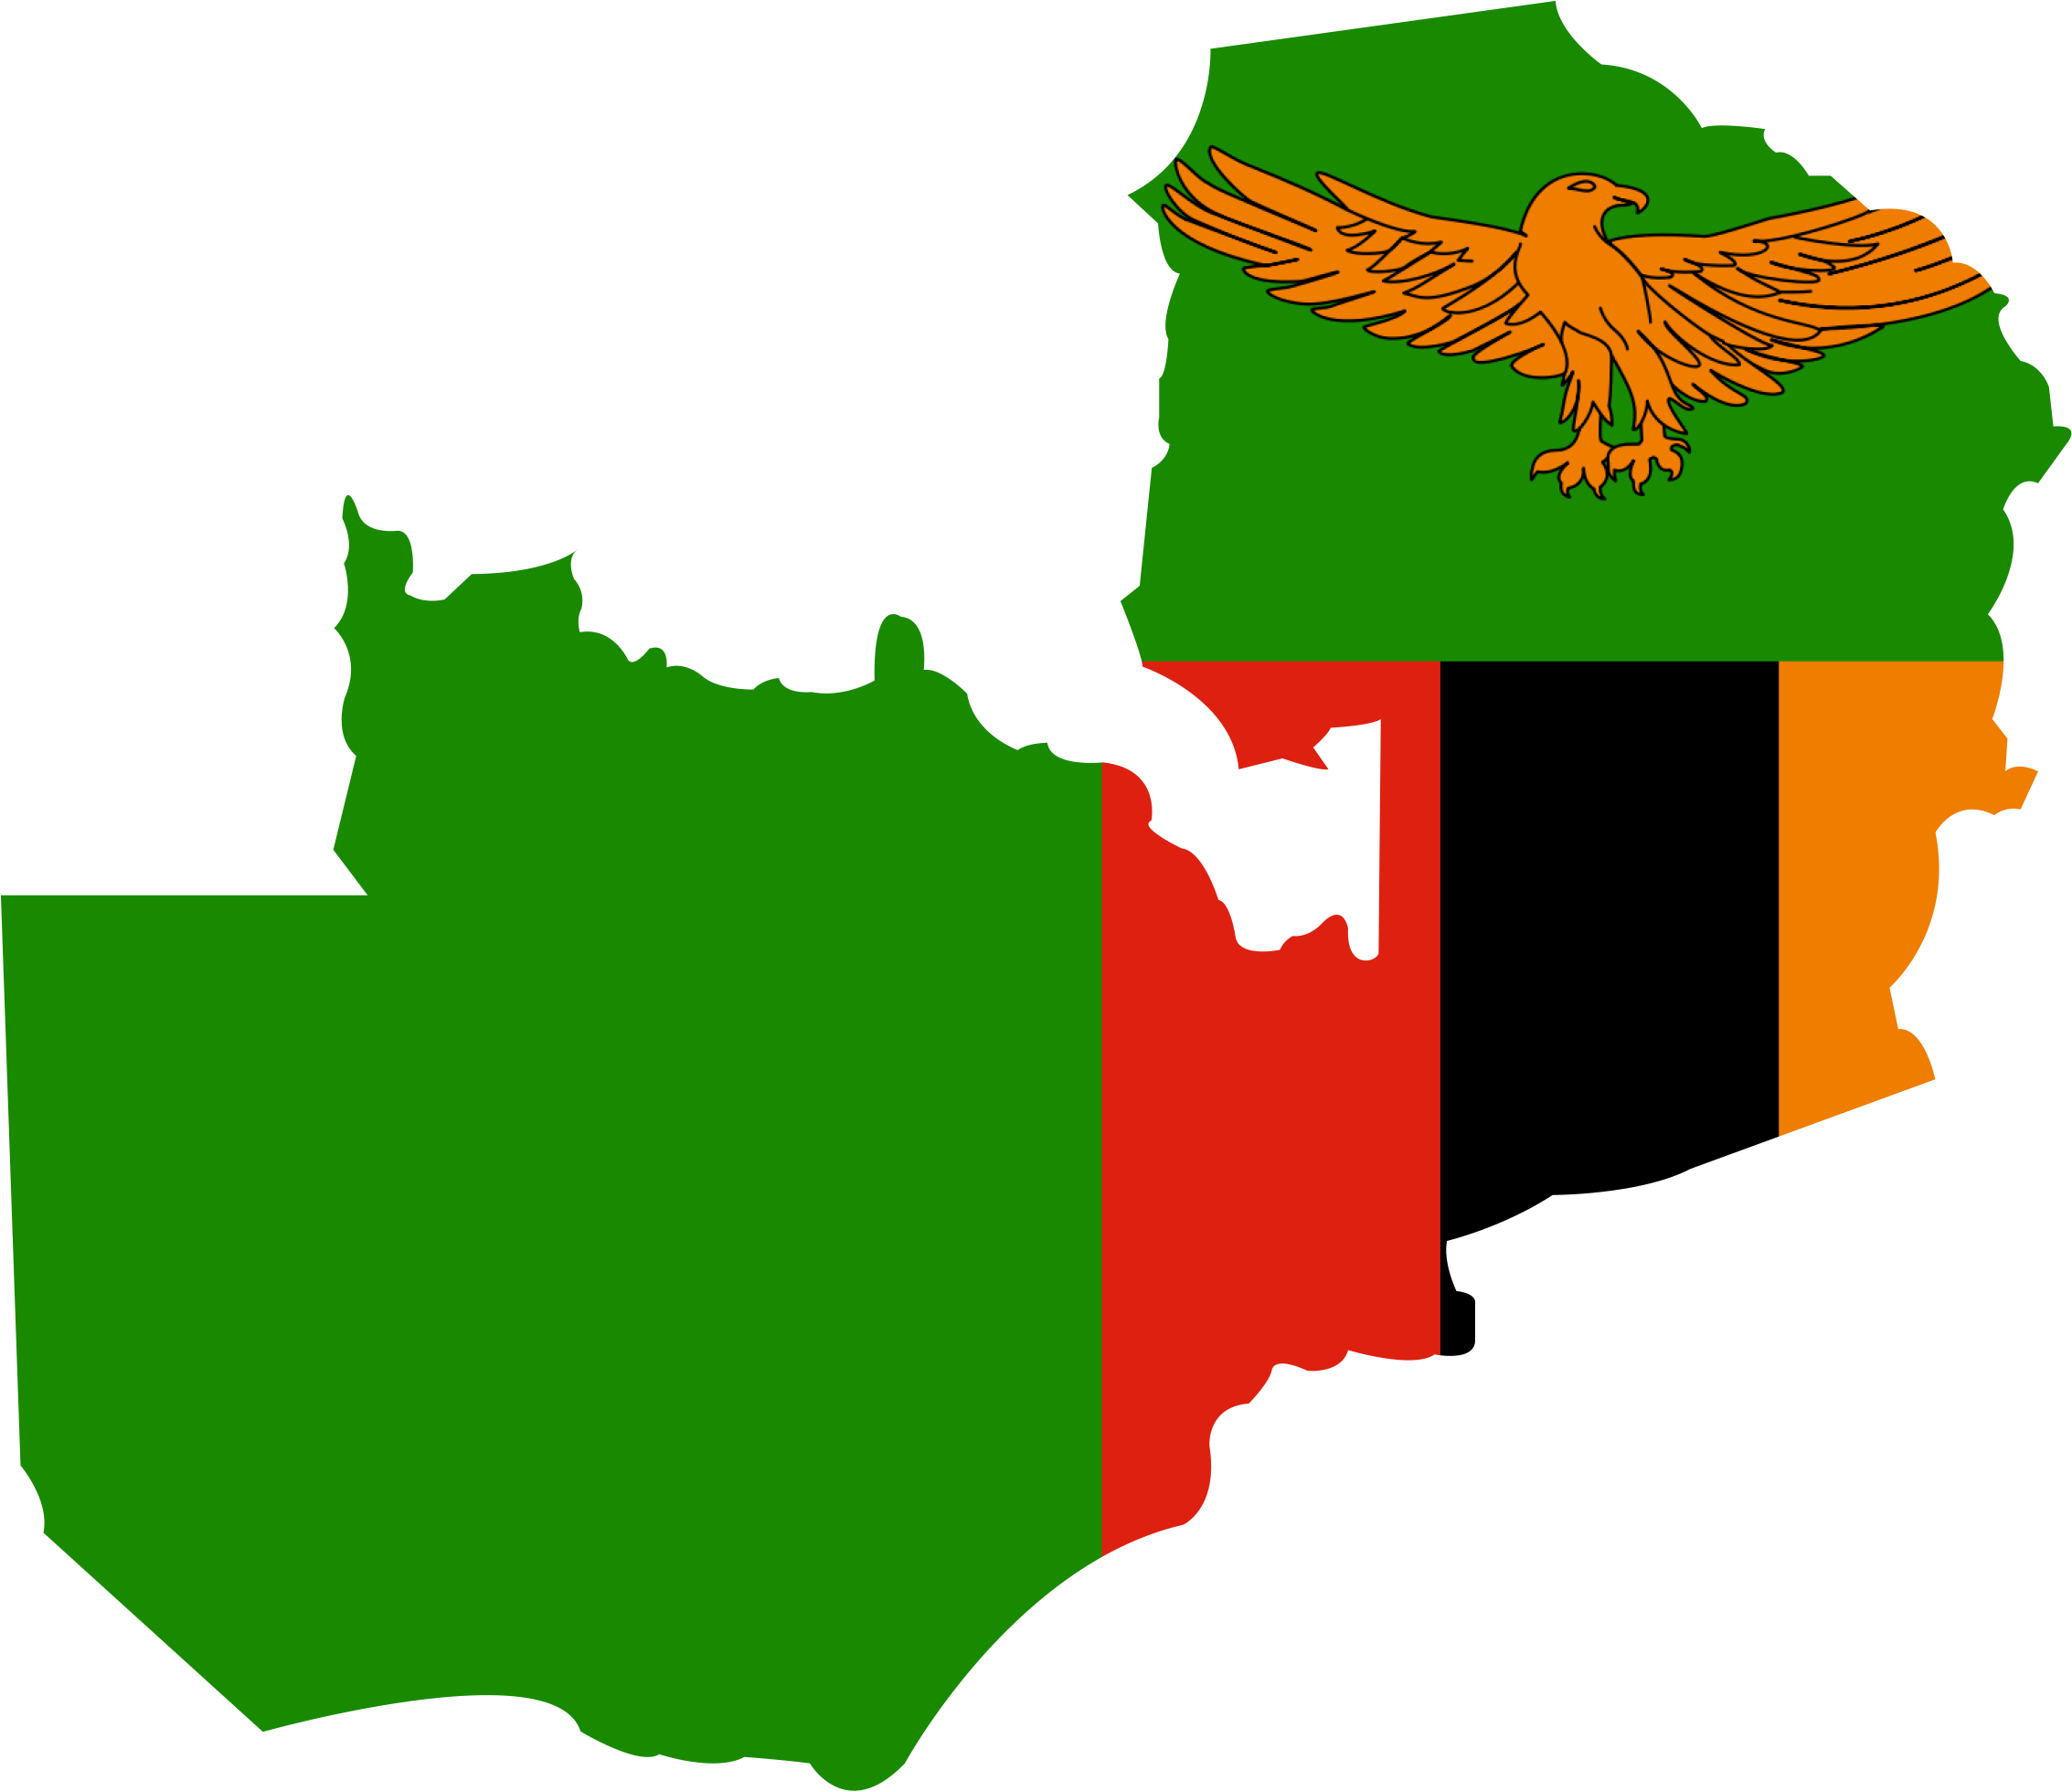 Zambiagraphic - Zambia Map And Flag (2279x1987)